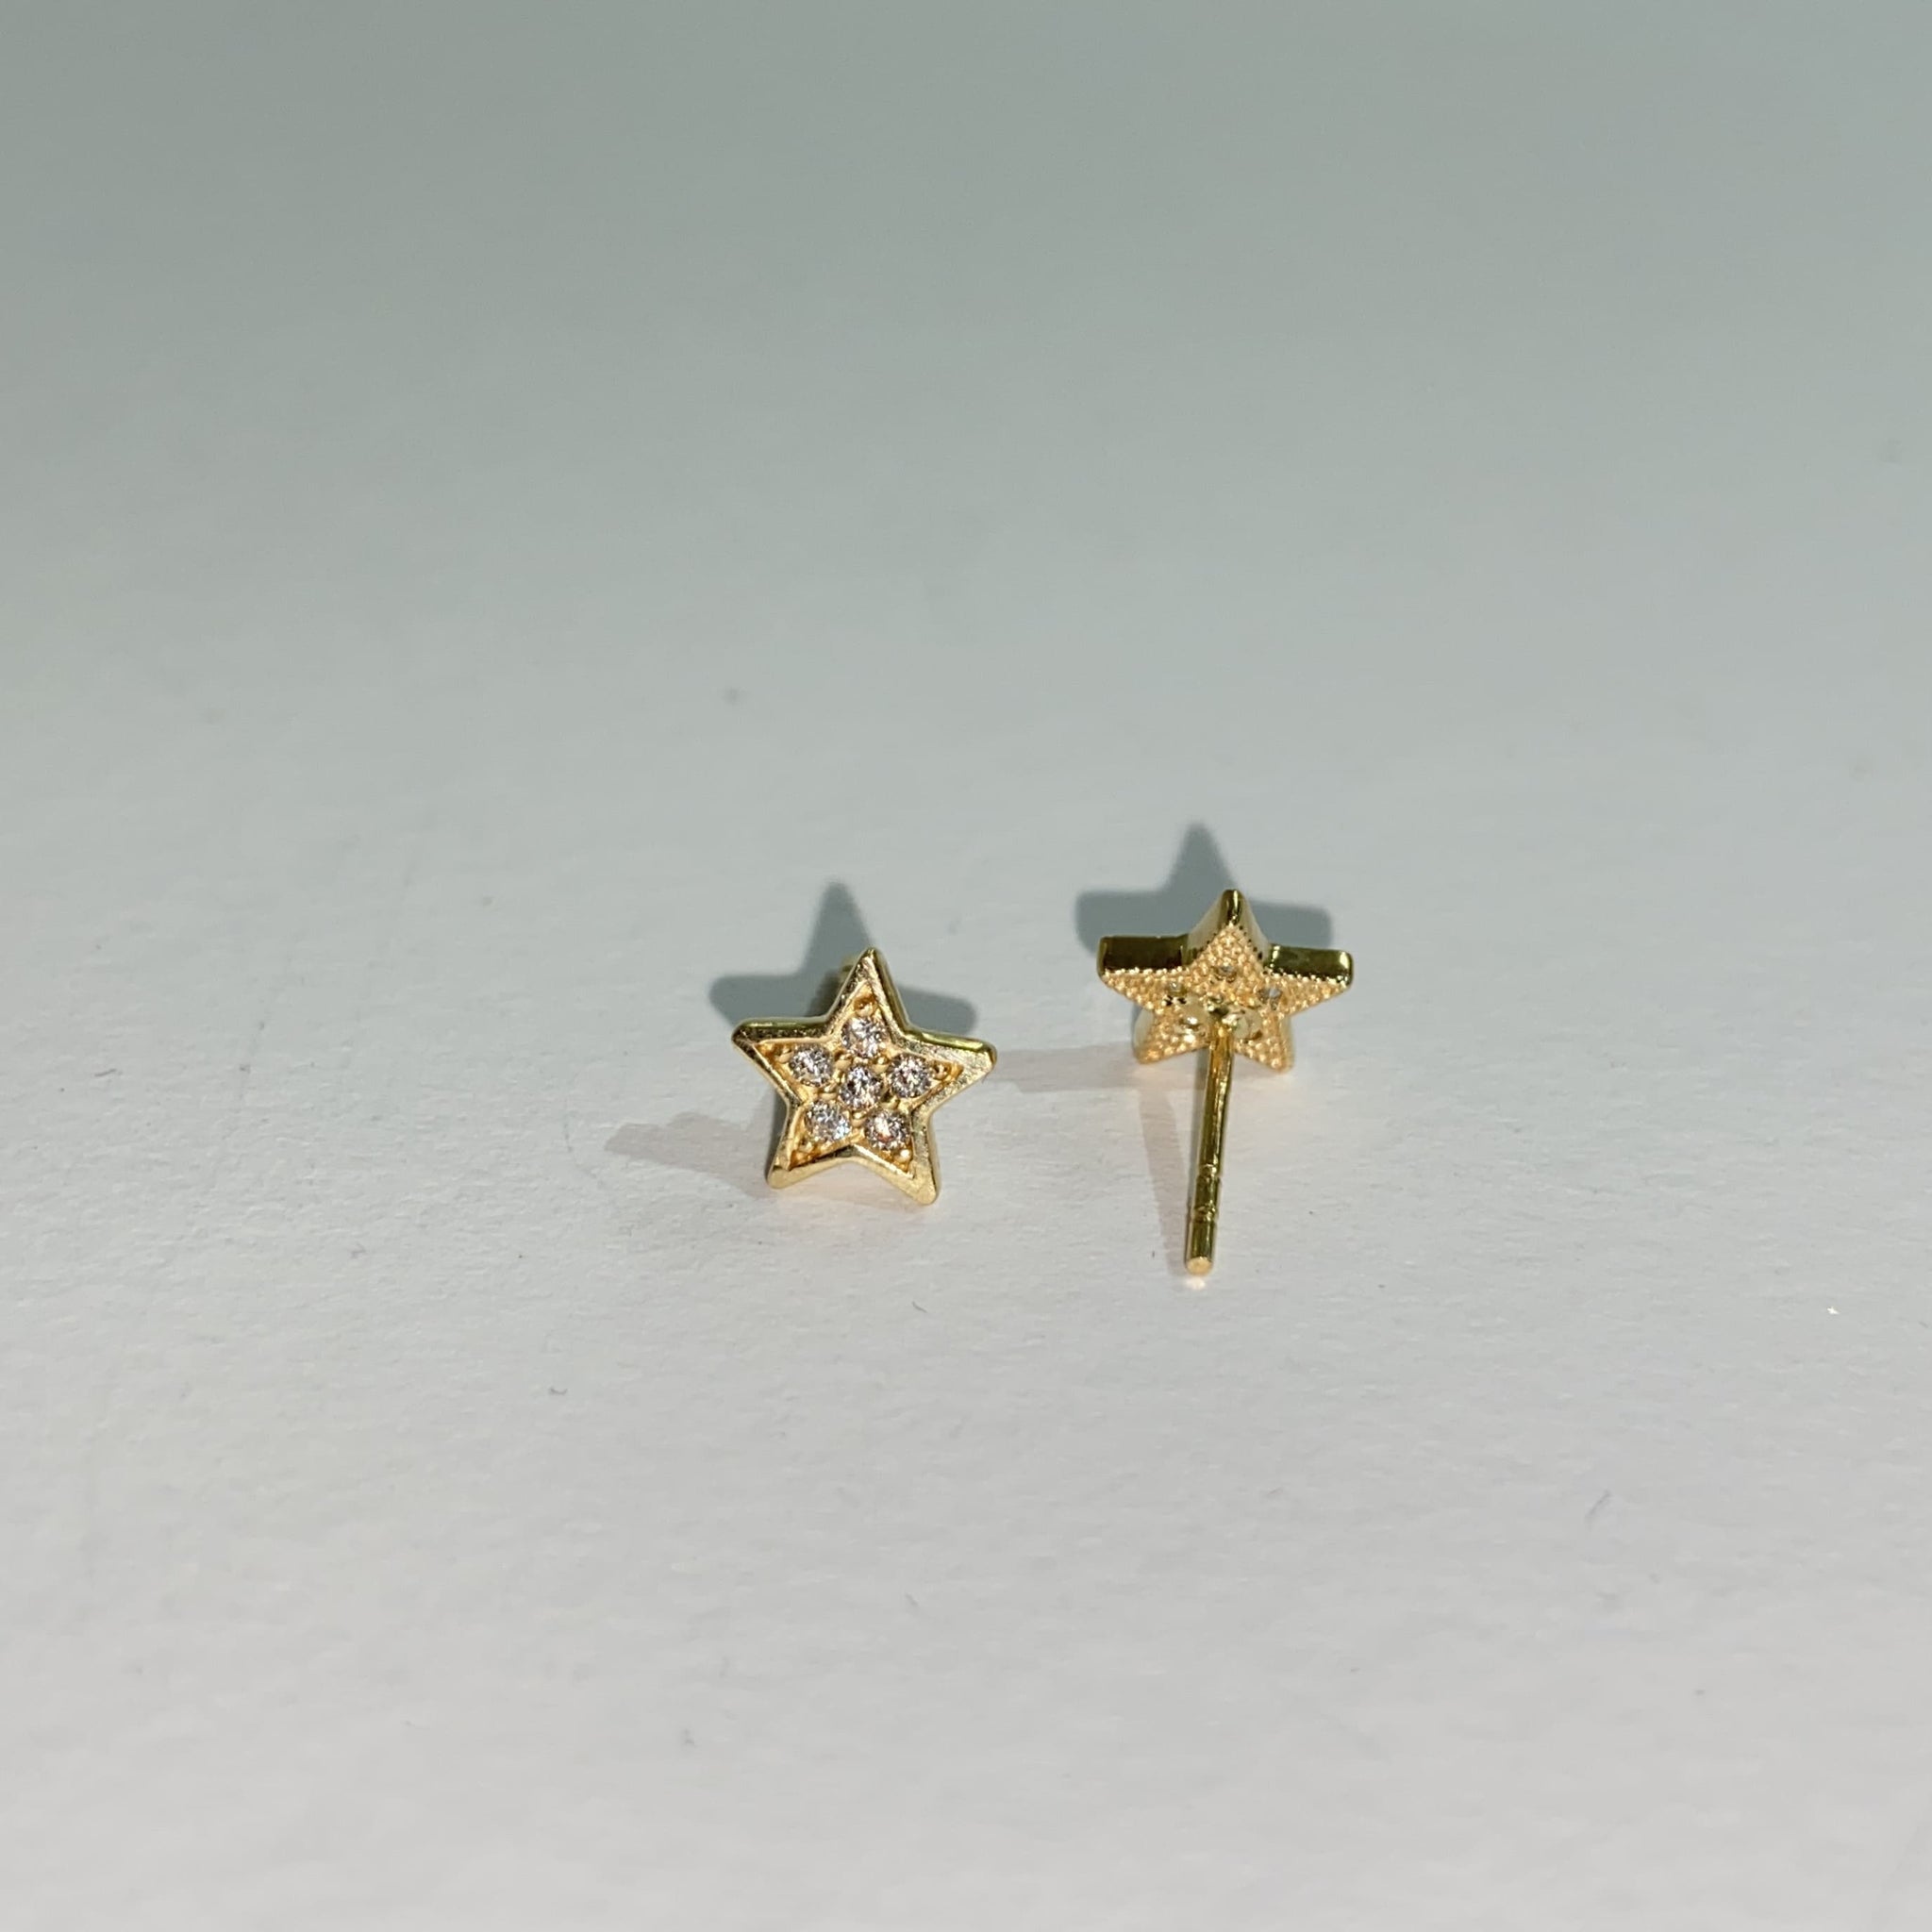 Star earrings / oorbellen 200 - 14 karaat